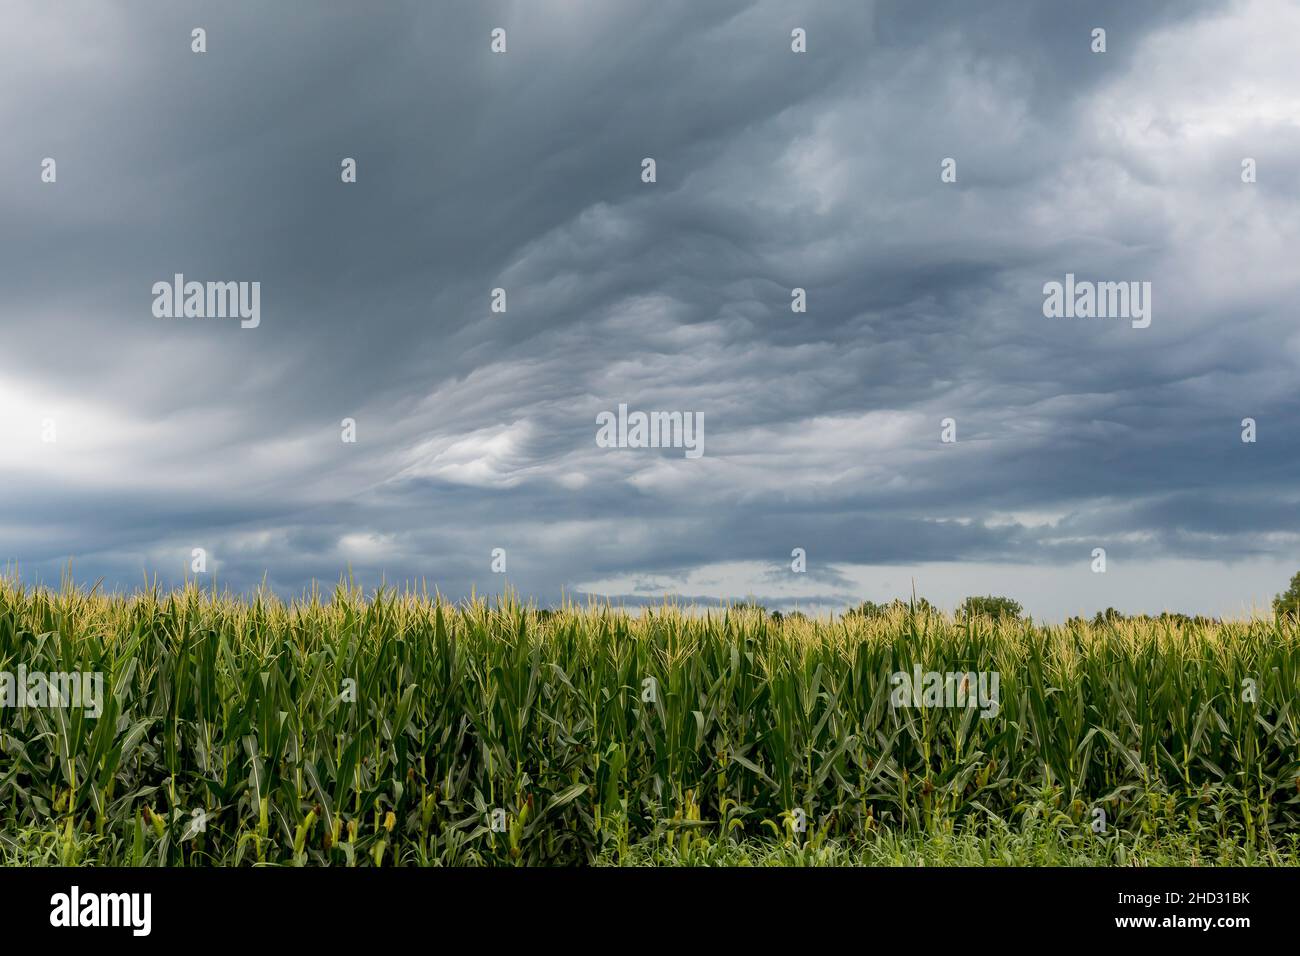 Orage nuages dans le ciel au-dessus du champ de maïs.Le concept de l'assurance-récolte, des dommages causés par les tempêtes et de la sécheresse. Banque D'Images